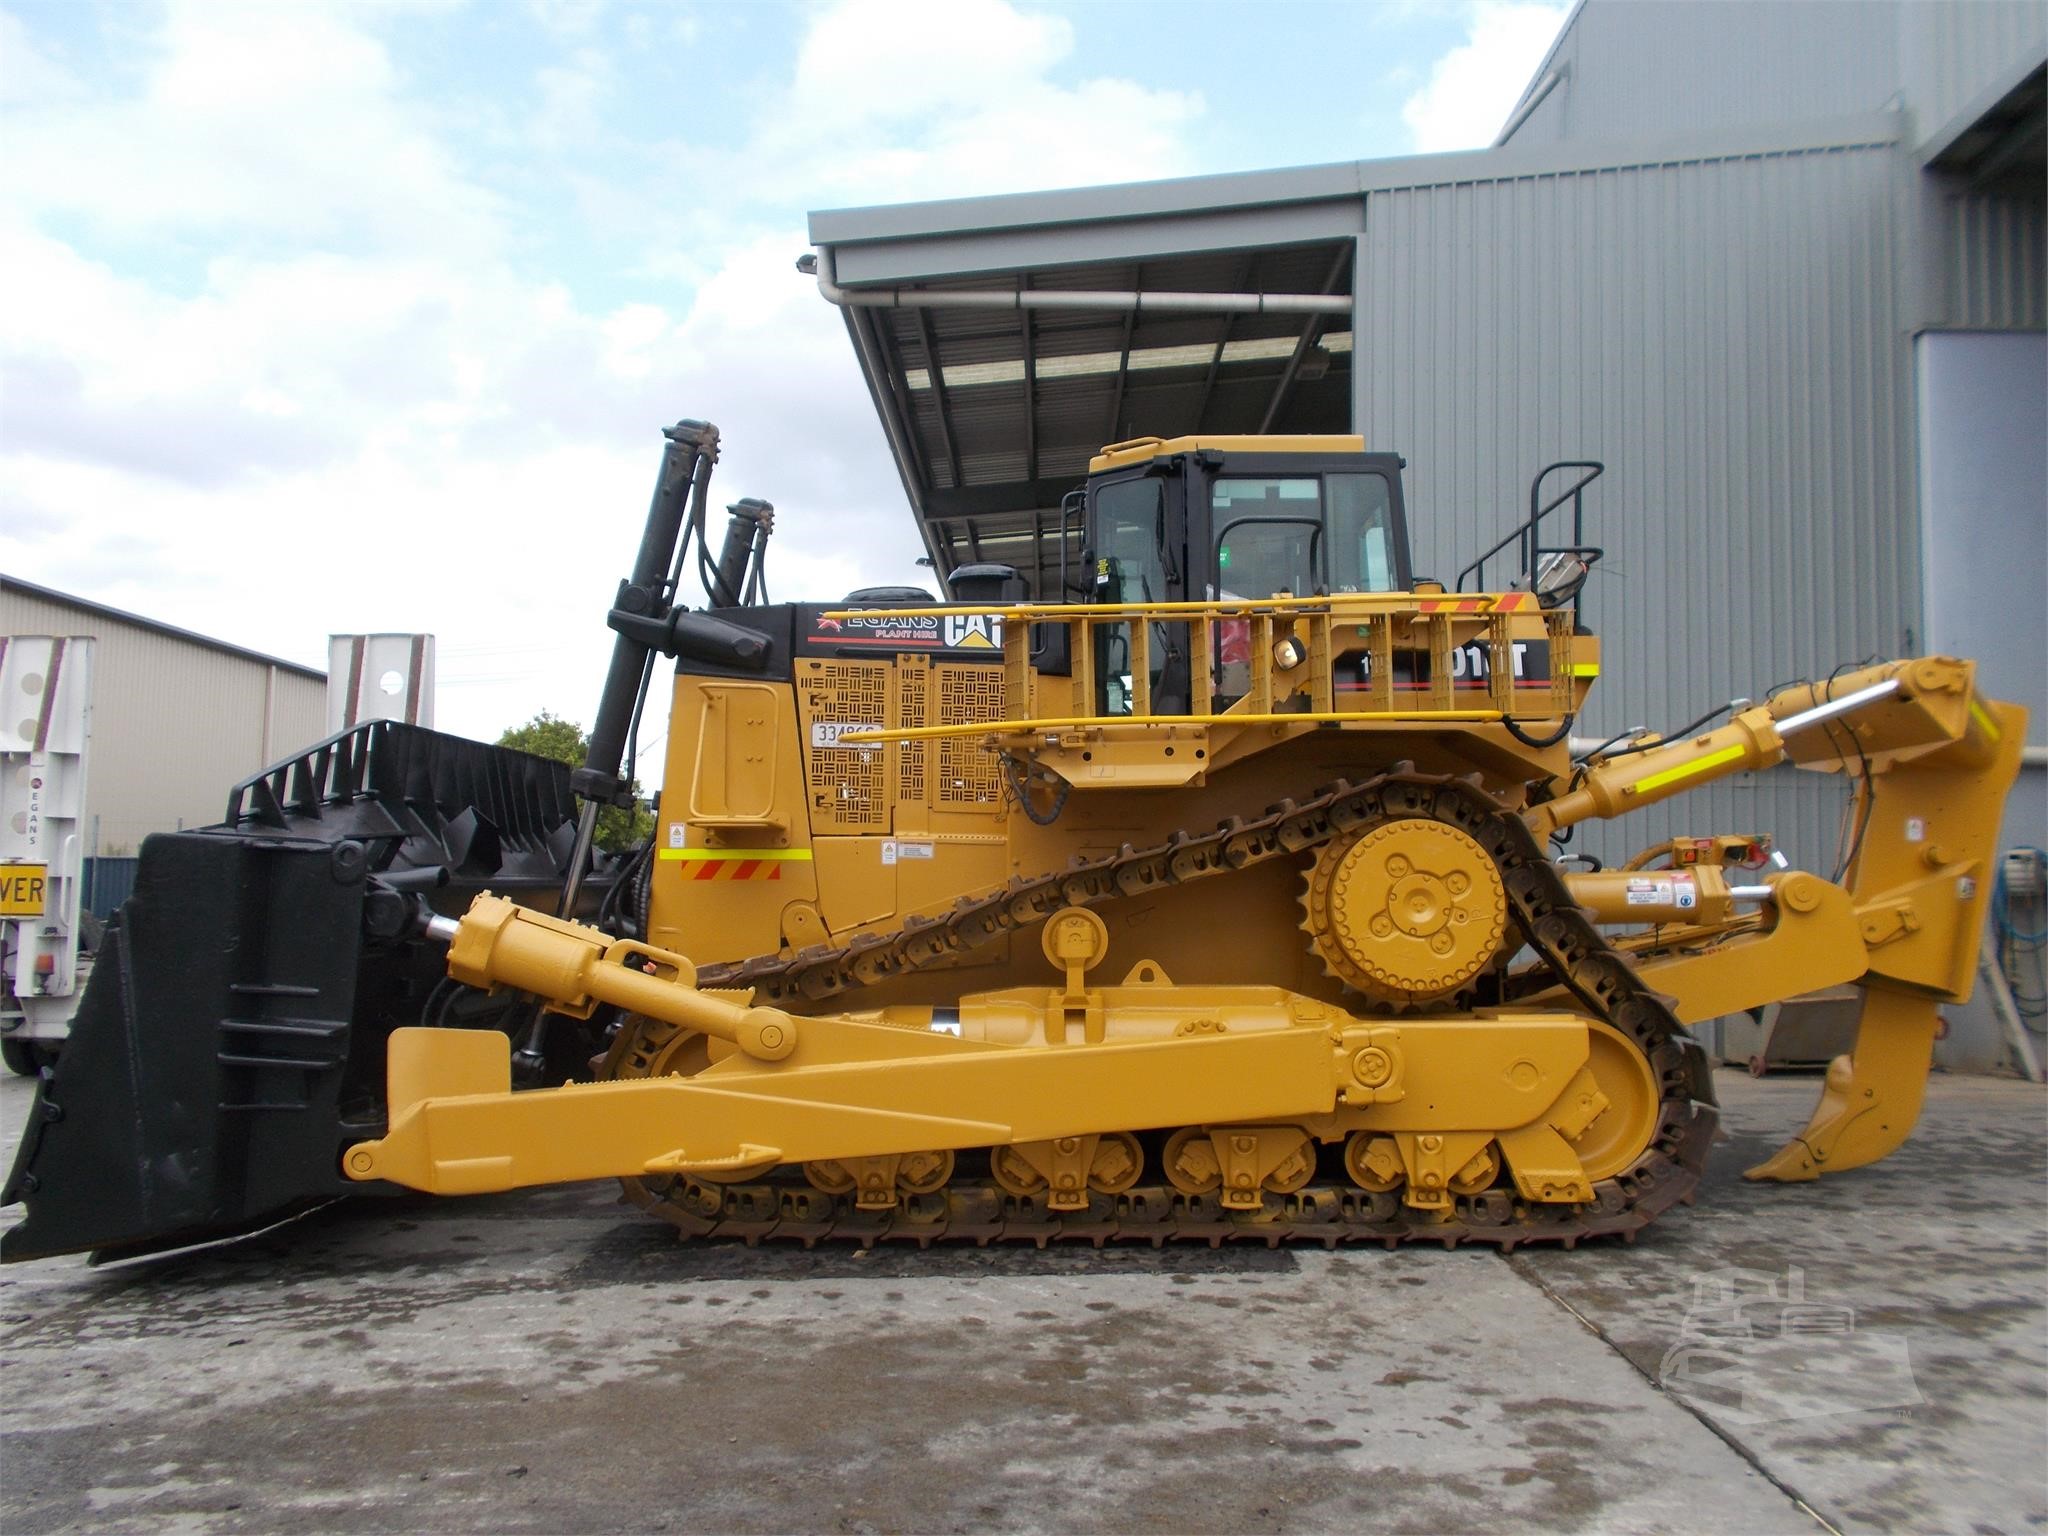 2005 Caterpillar D10t For Sale In Brisbane Queensland Machinerytrader Australia